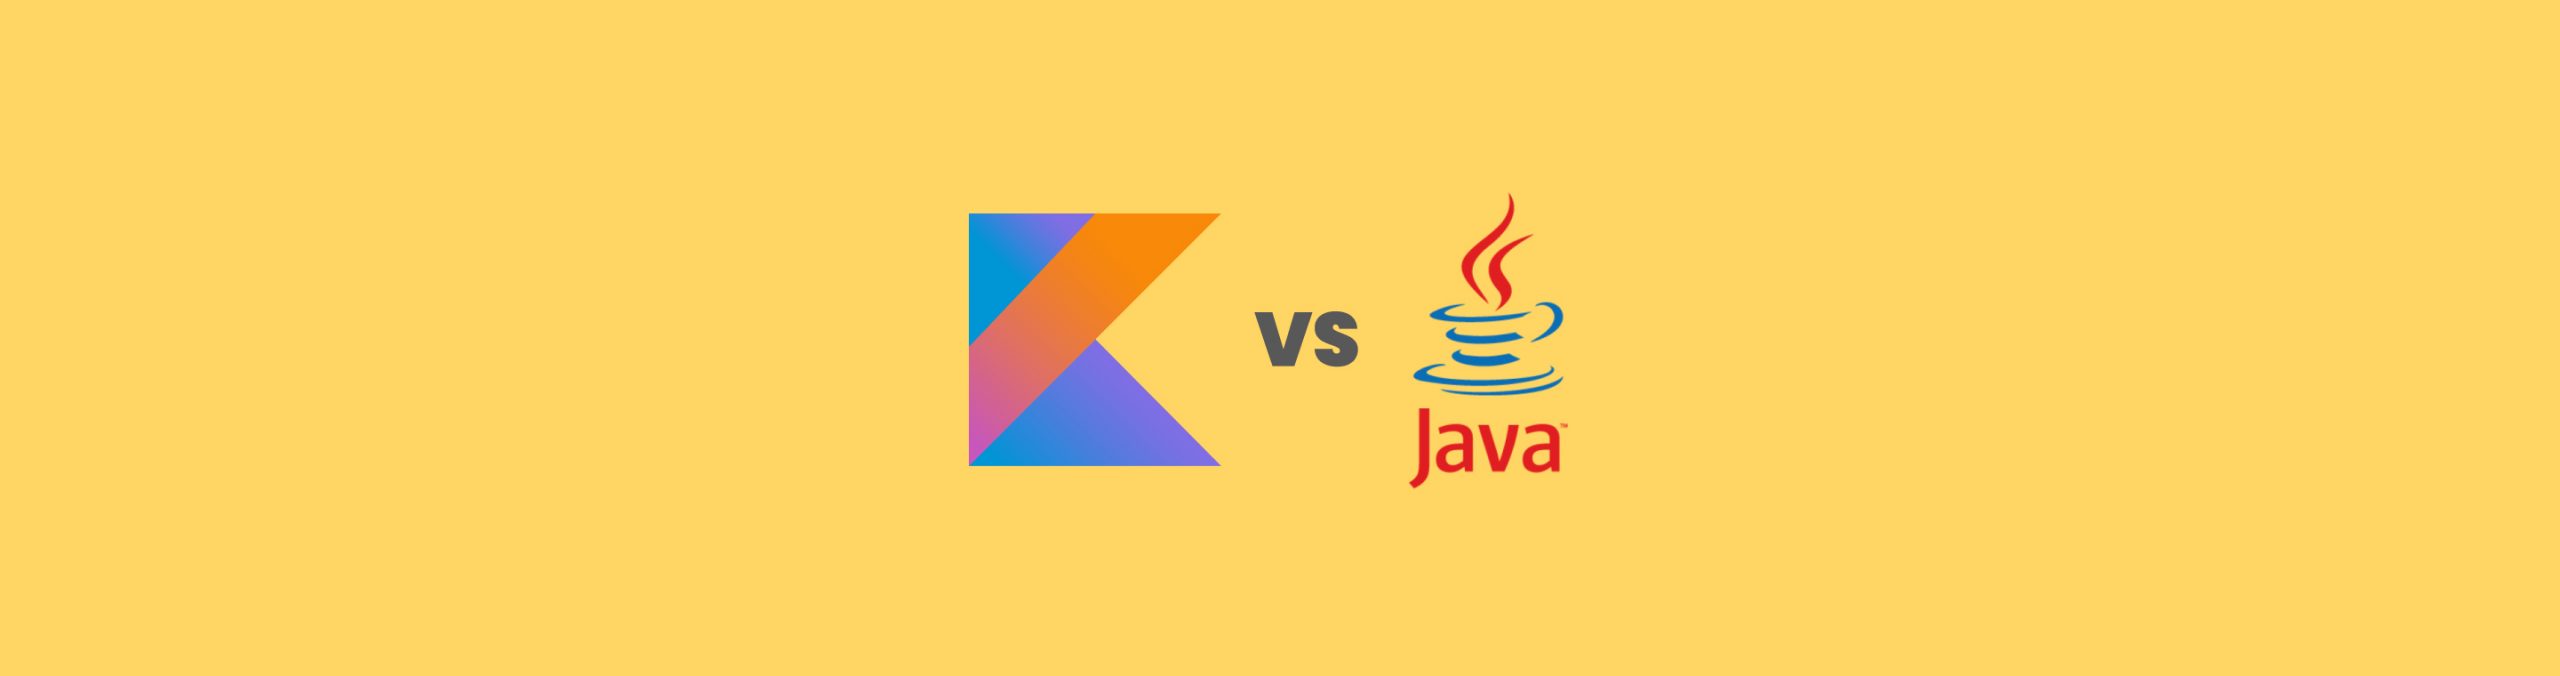 Kotlin vs Java: similitudes y diferencias